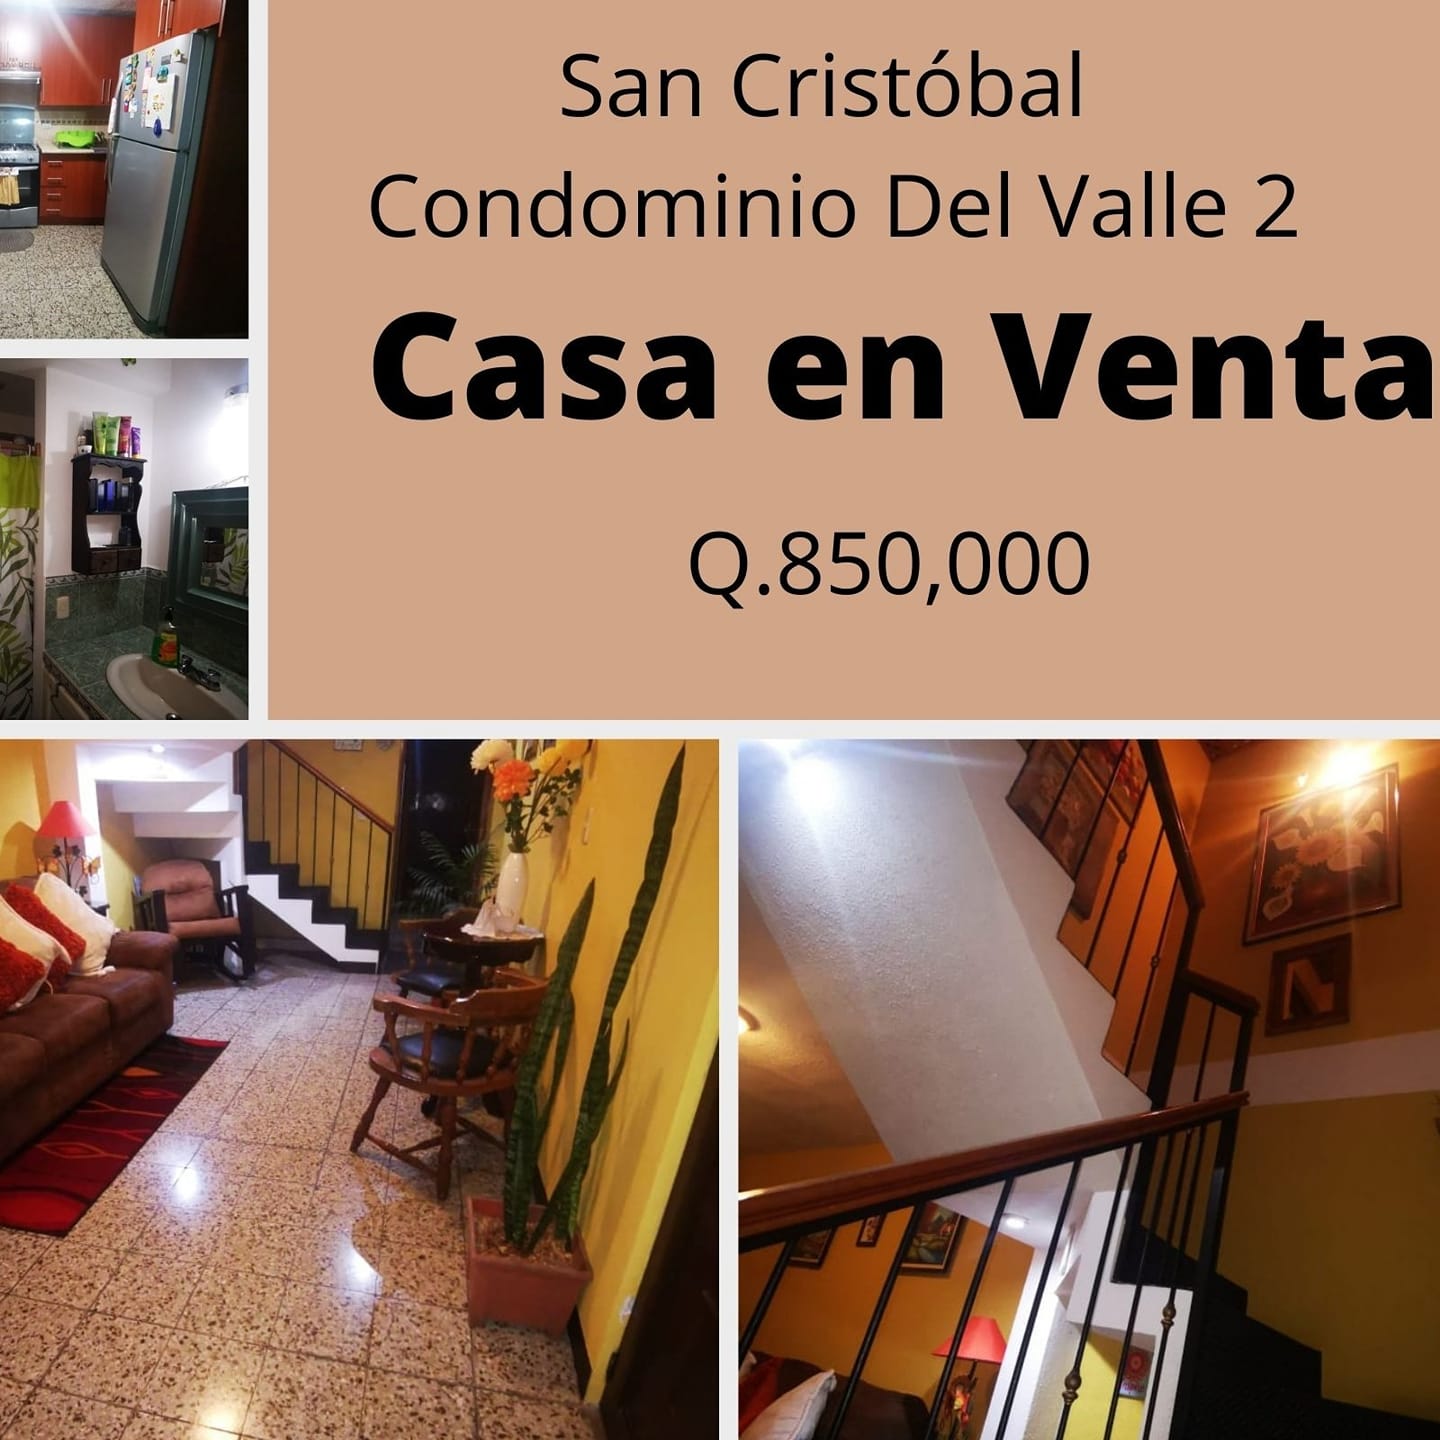 Casa en Venta San Cristobal 
Condominio Del Valle 2